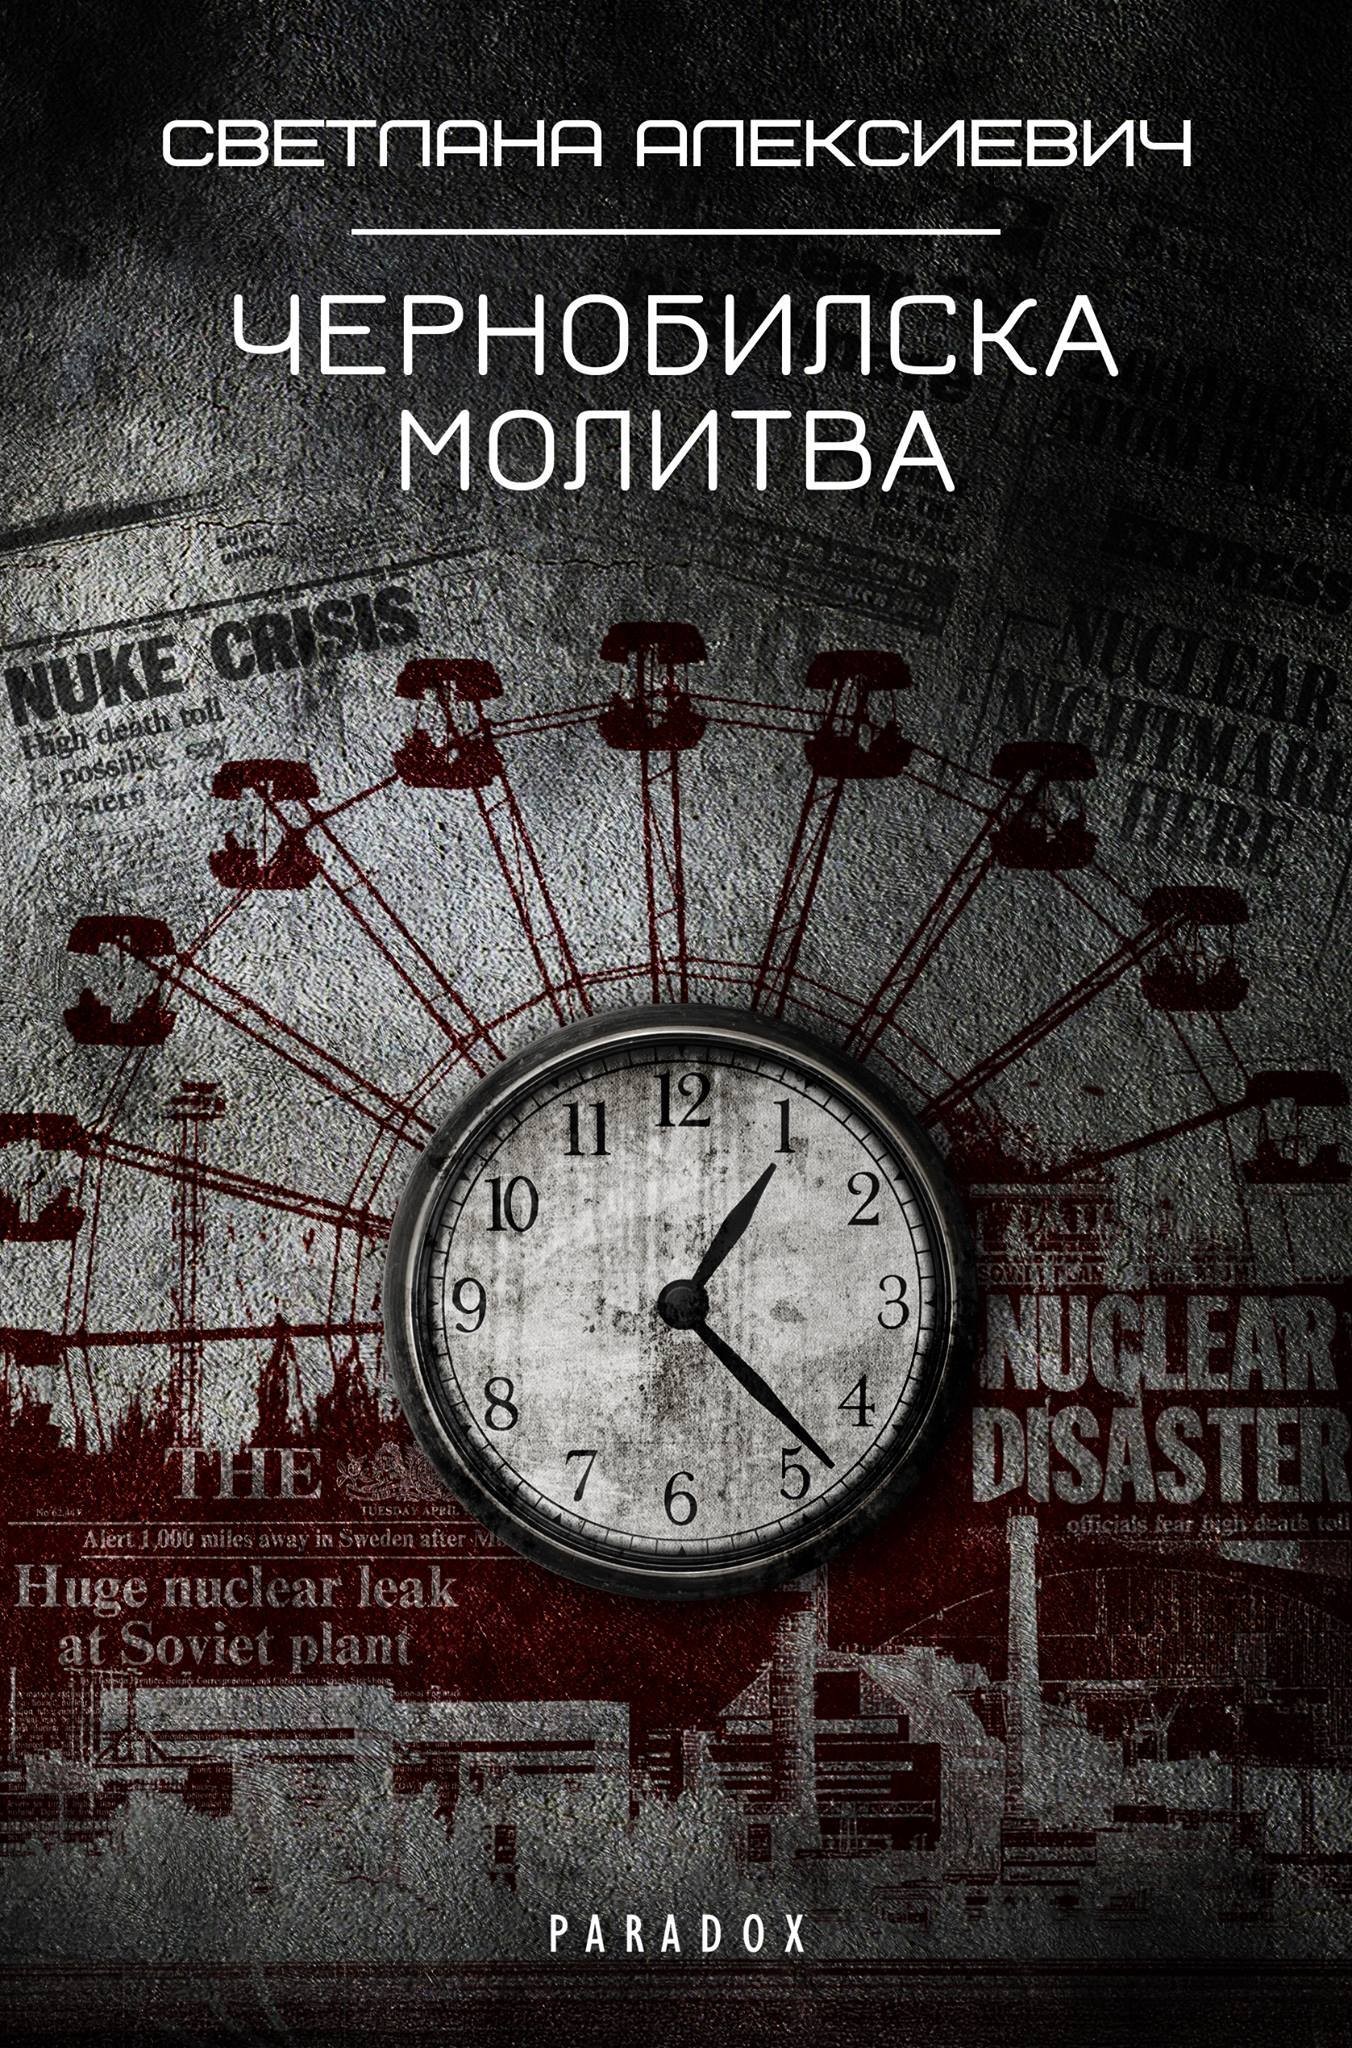 Център за книгата към НБУ: видео ревю за „Чернобилска молитва“ от Светлана Алексиевич